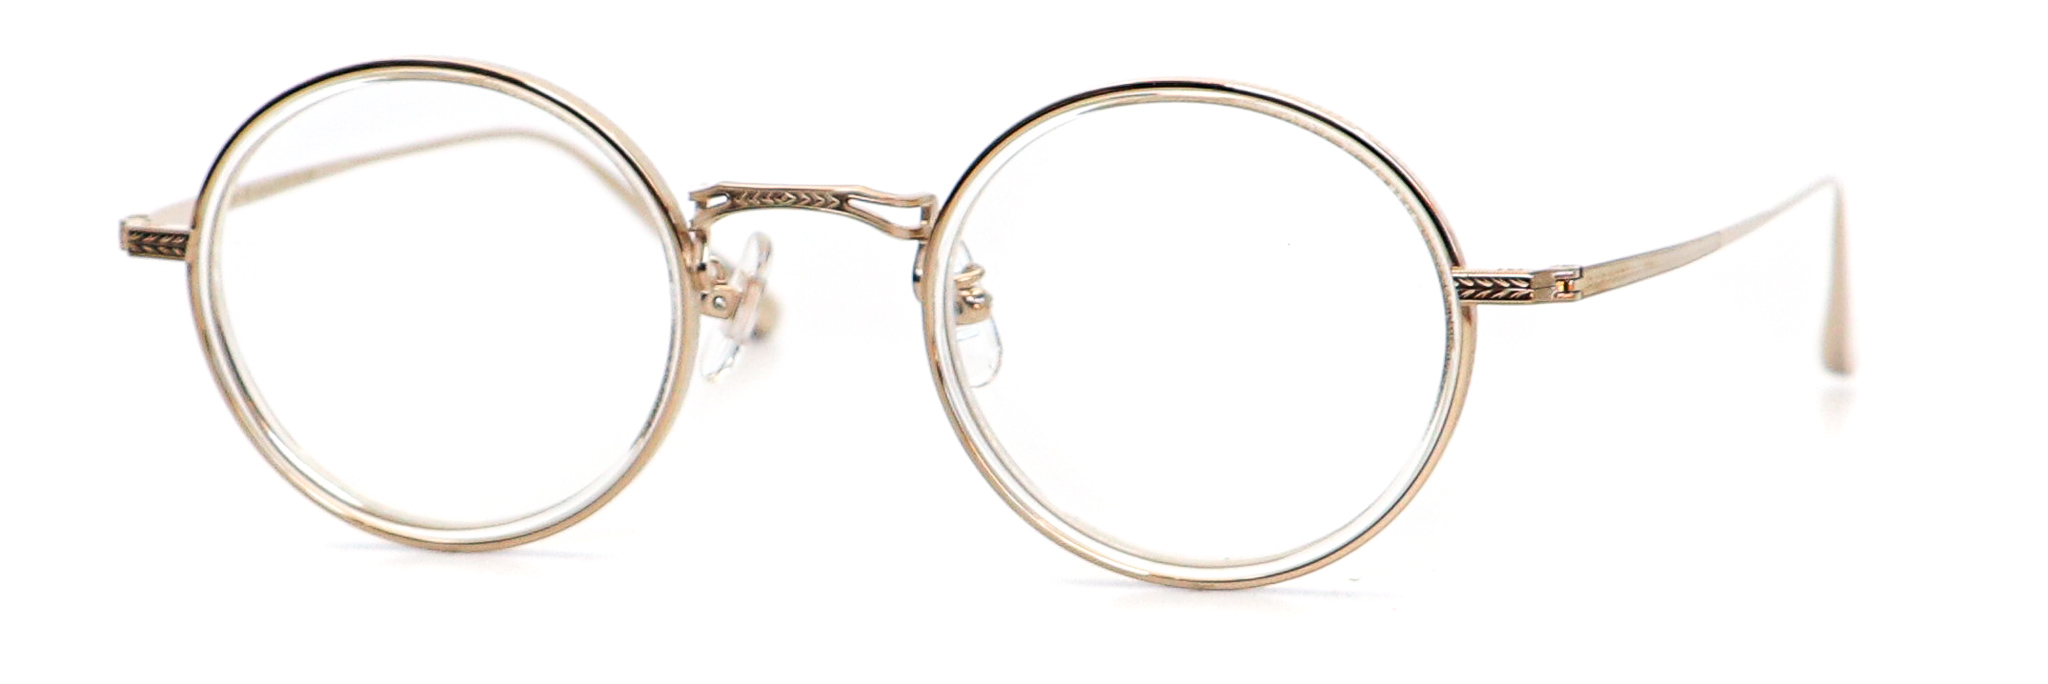 眼鏡のカラータイプC-1 Clear/Gold